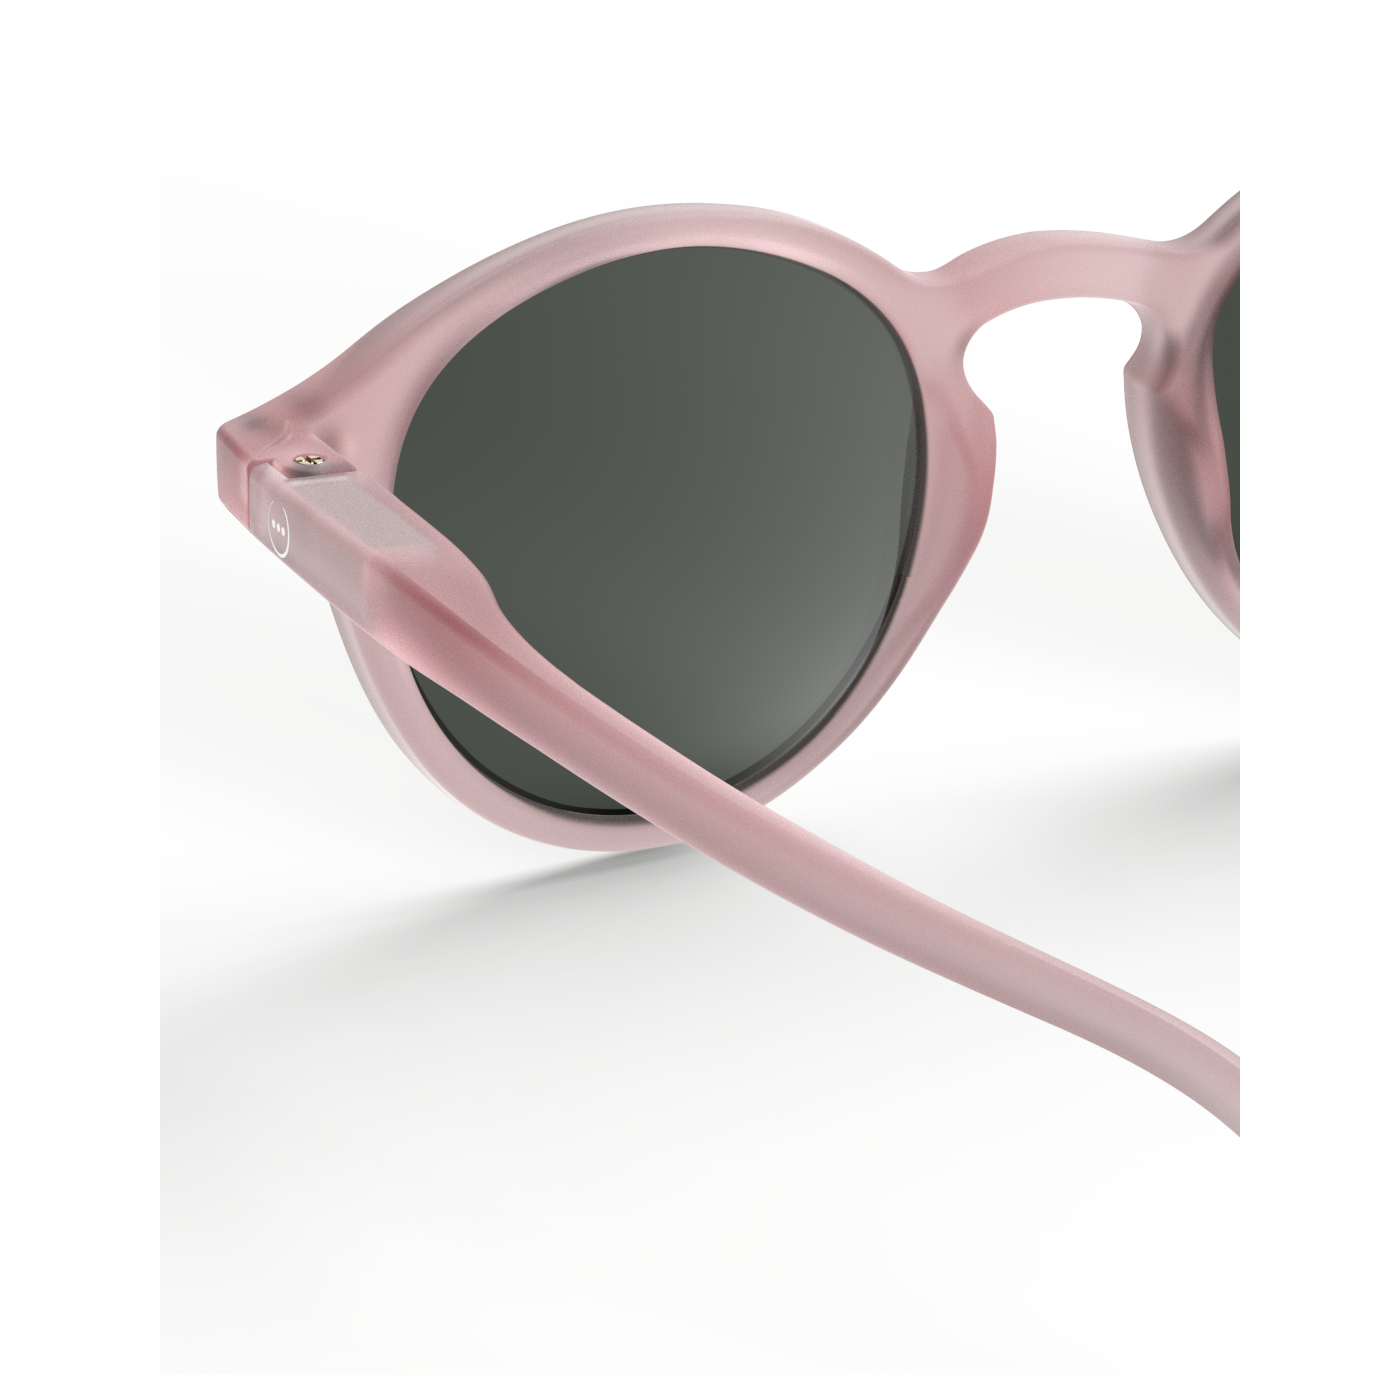 Solbriller, Junior #D, pink